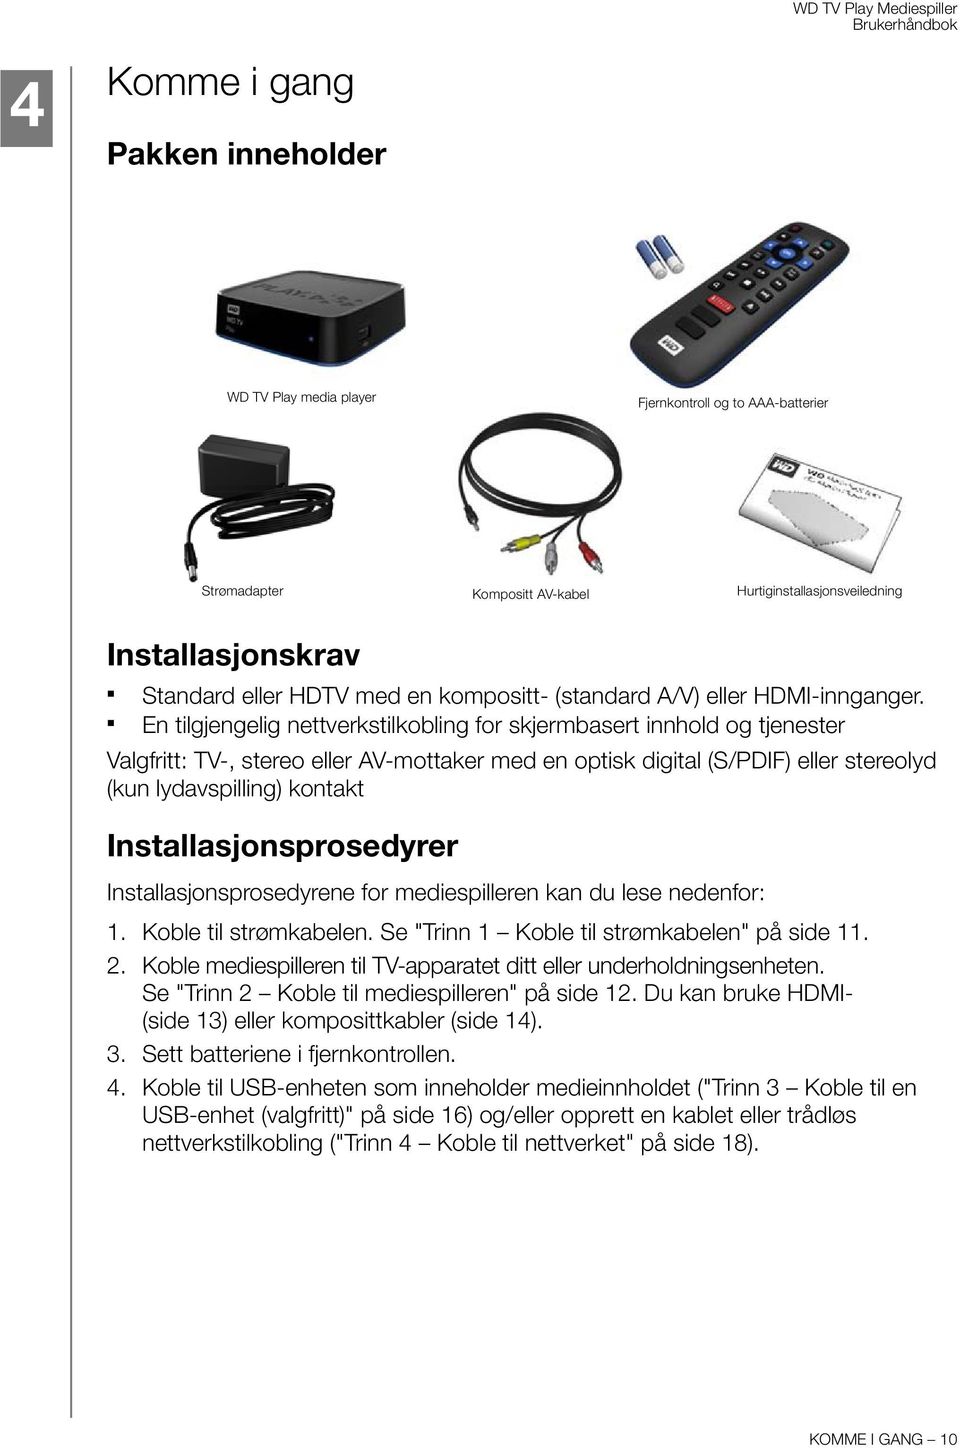 En tilgjengelig nettverkstilkobling for skjermbasert innhold og tjenester Valgfritt: TV-, stereo eller AV-mottaker med en optisk digital (S/PDIF) eller stereolyd (kun lydavspilling) kontakt